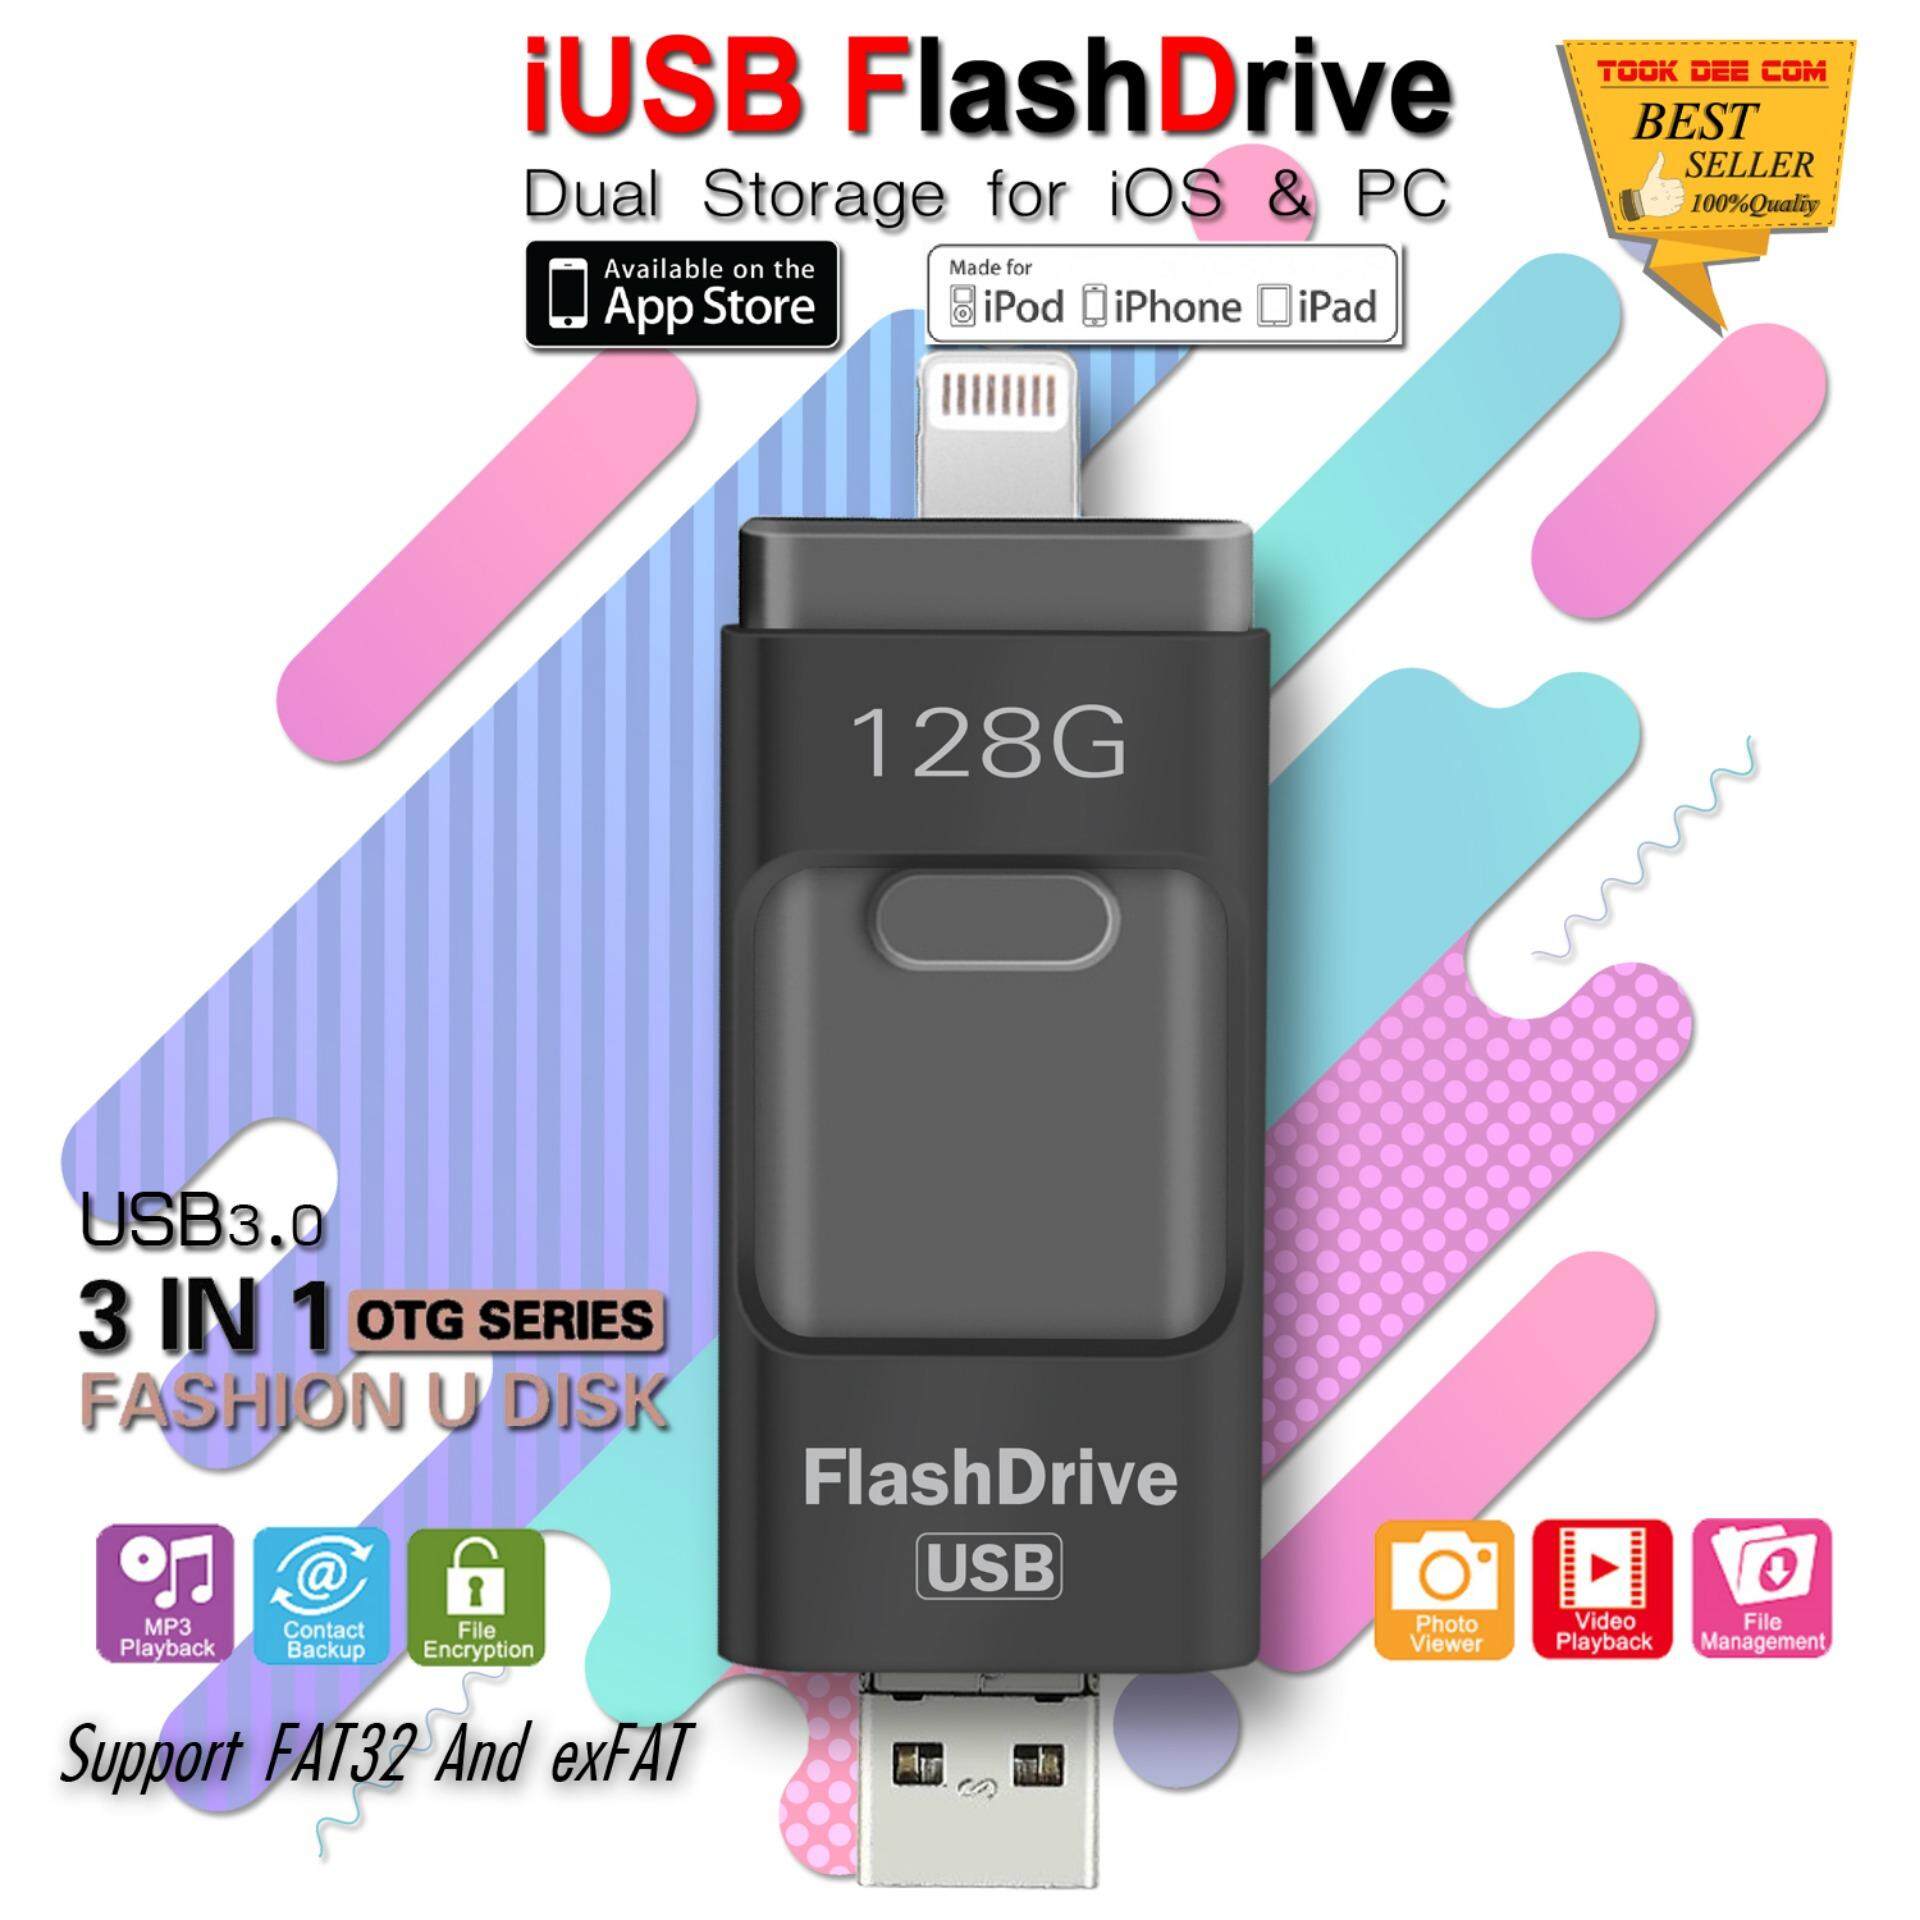 (ของแท้) IDragon 128G iUSB FlashDrive LX-890 USB3.0 OTG แฟลชไดร์ฟสำรองข้อมูลสำหรับ iPhone/iPad (ดำ)